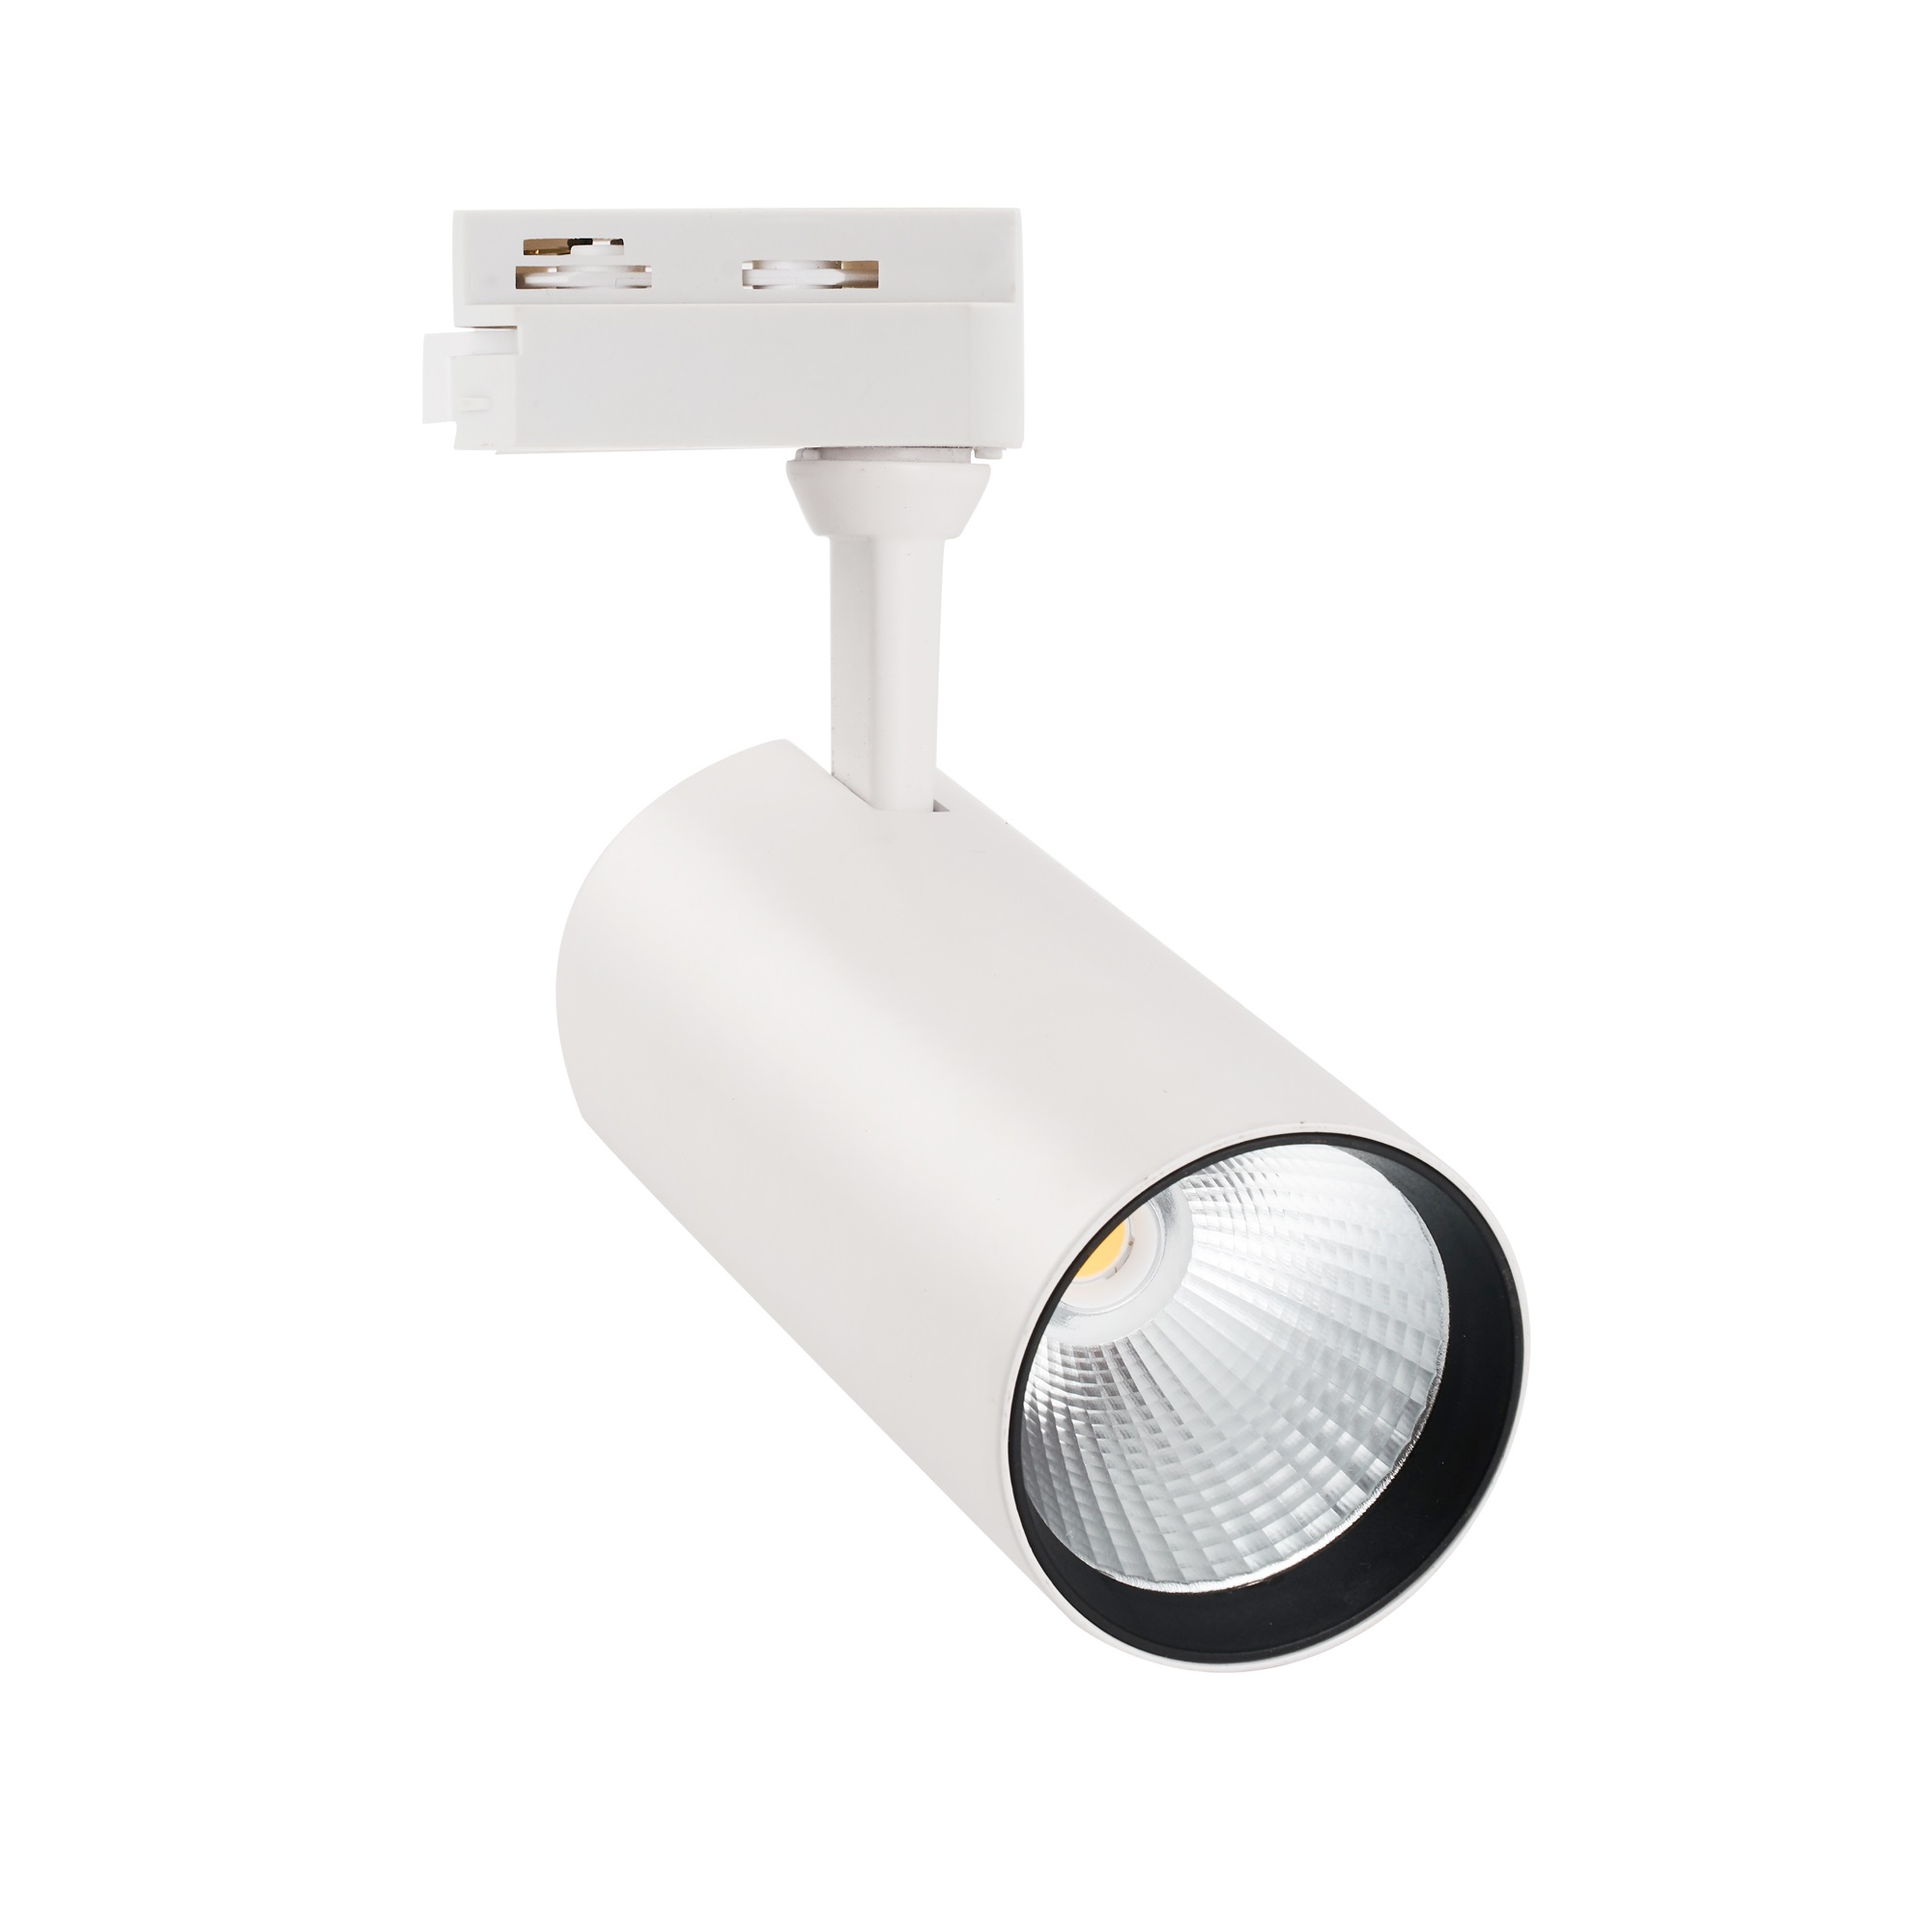 ULB-Q276 25W-4000К WHITE Светильник-прожектор светодиодный трековый. 2200 Лм. Белый свет 4000К. Корпус белый. ТМ Volpe.